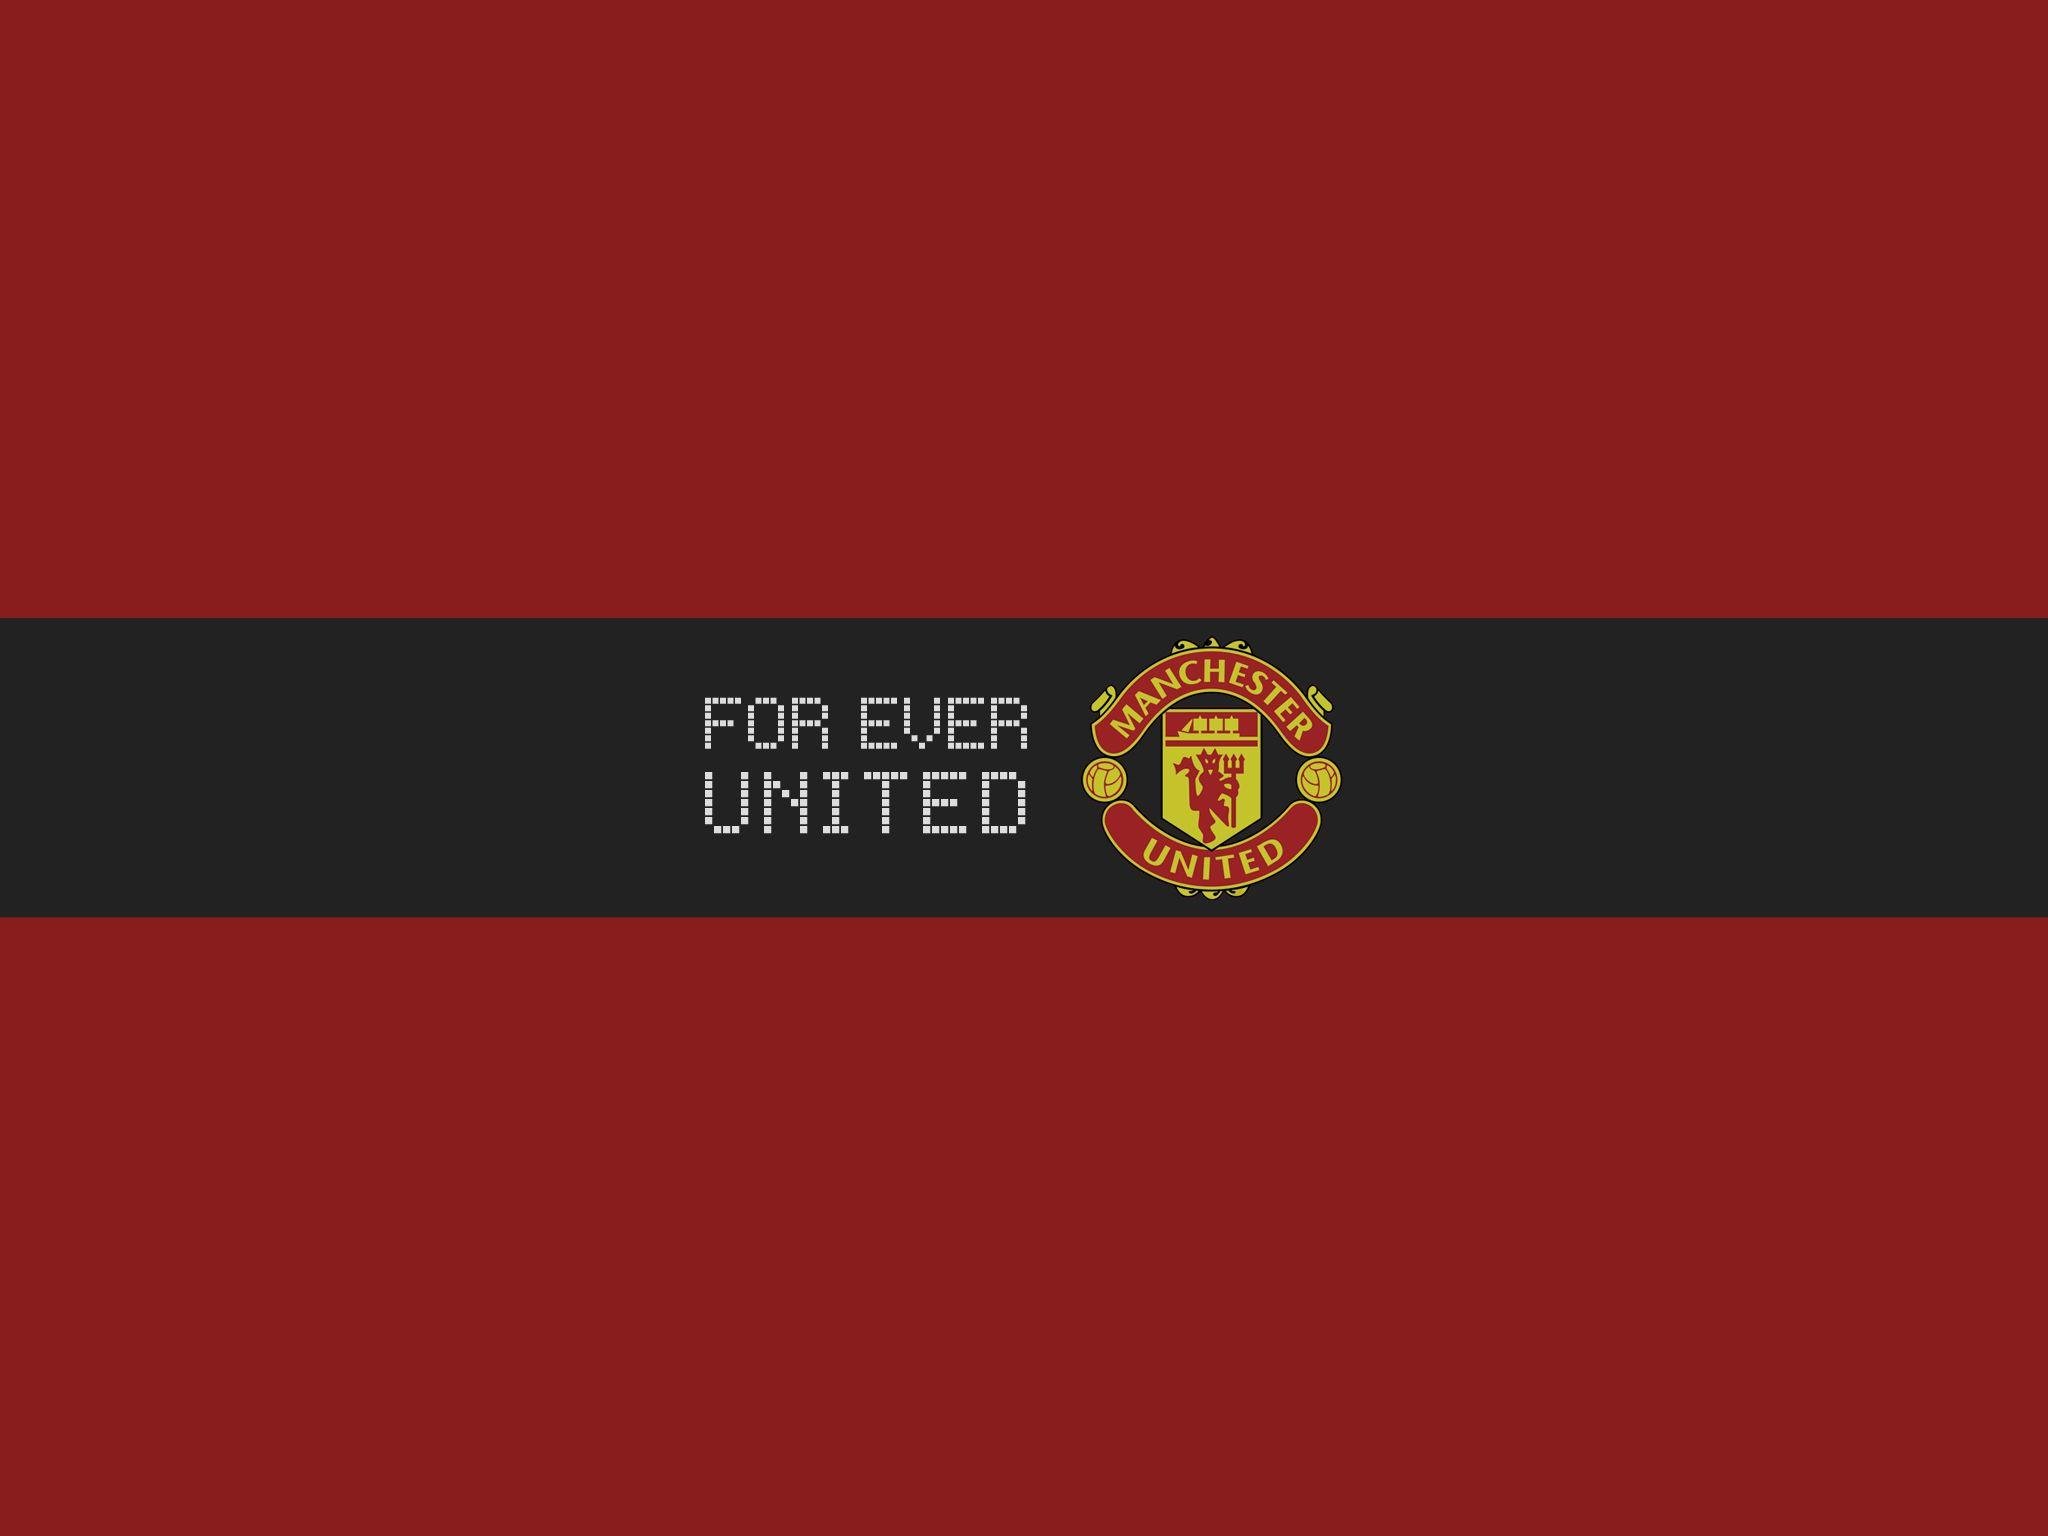 69: Manchester United Wallpaper for Desktop